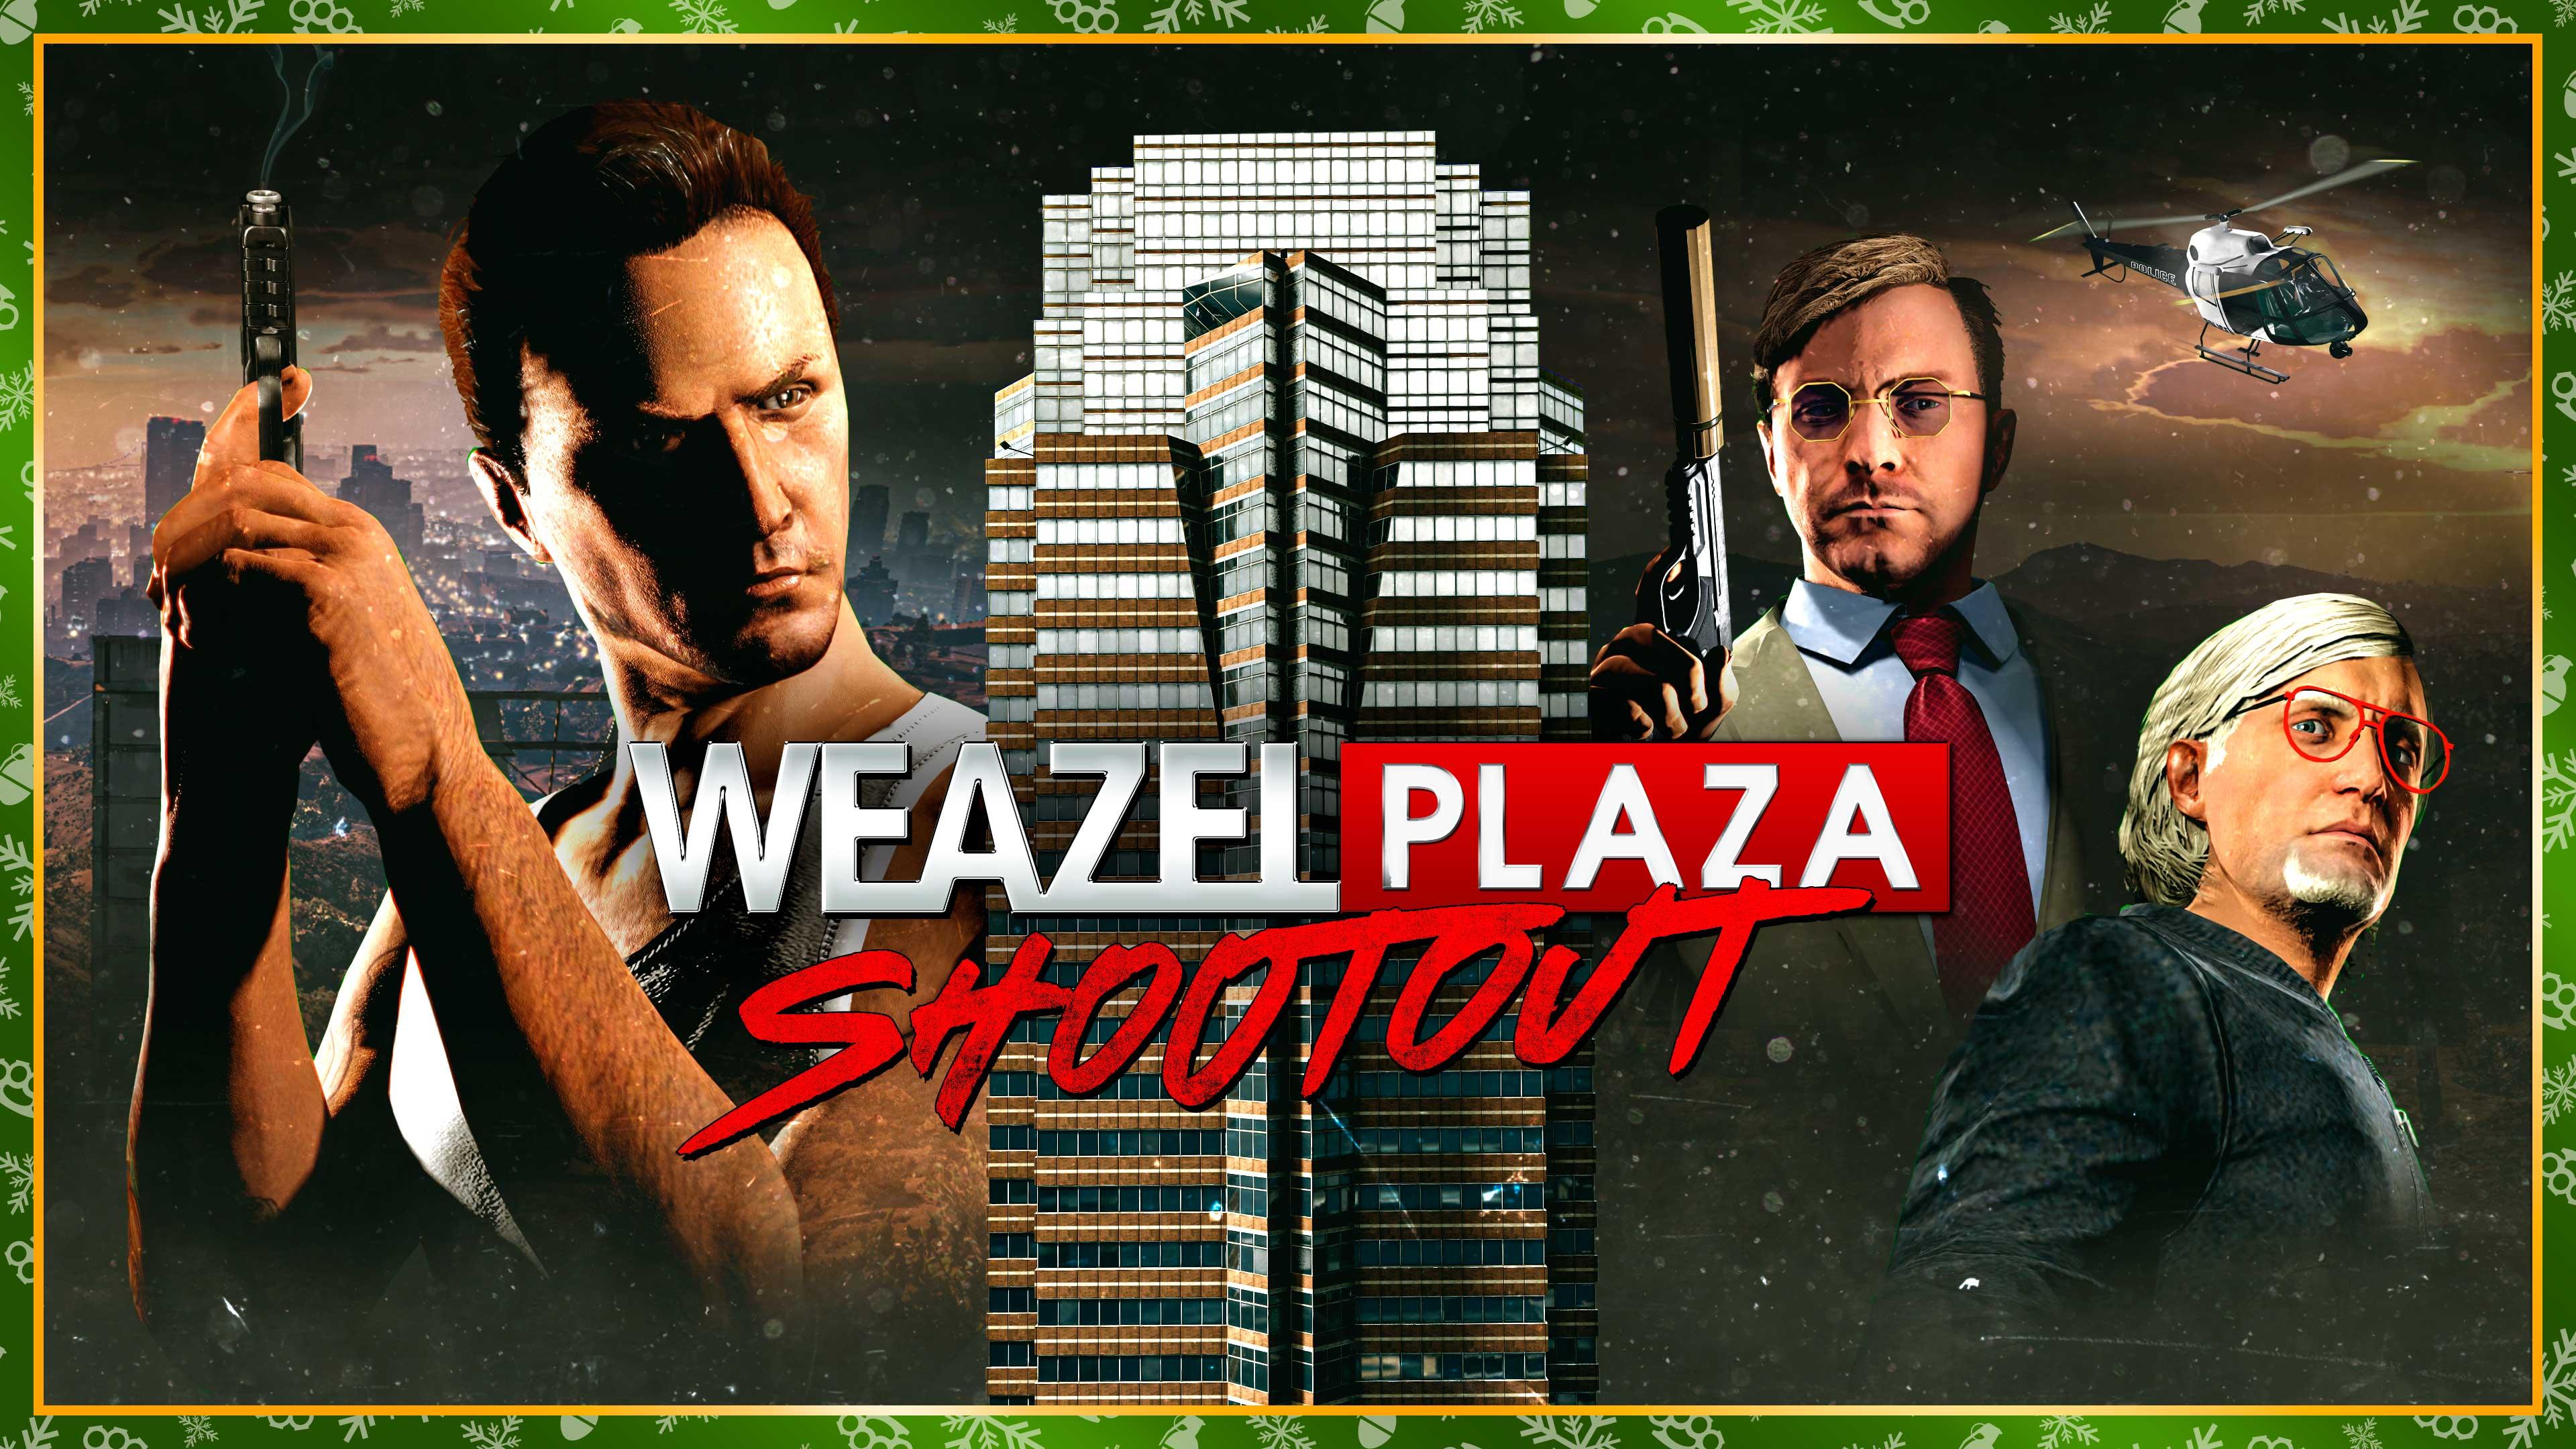 Weazel Plaza Shootout Return in GTA Online